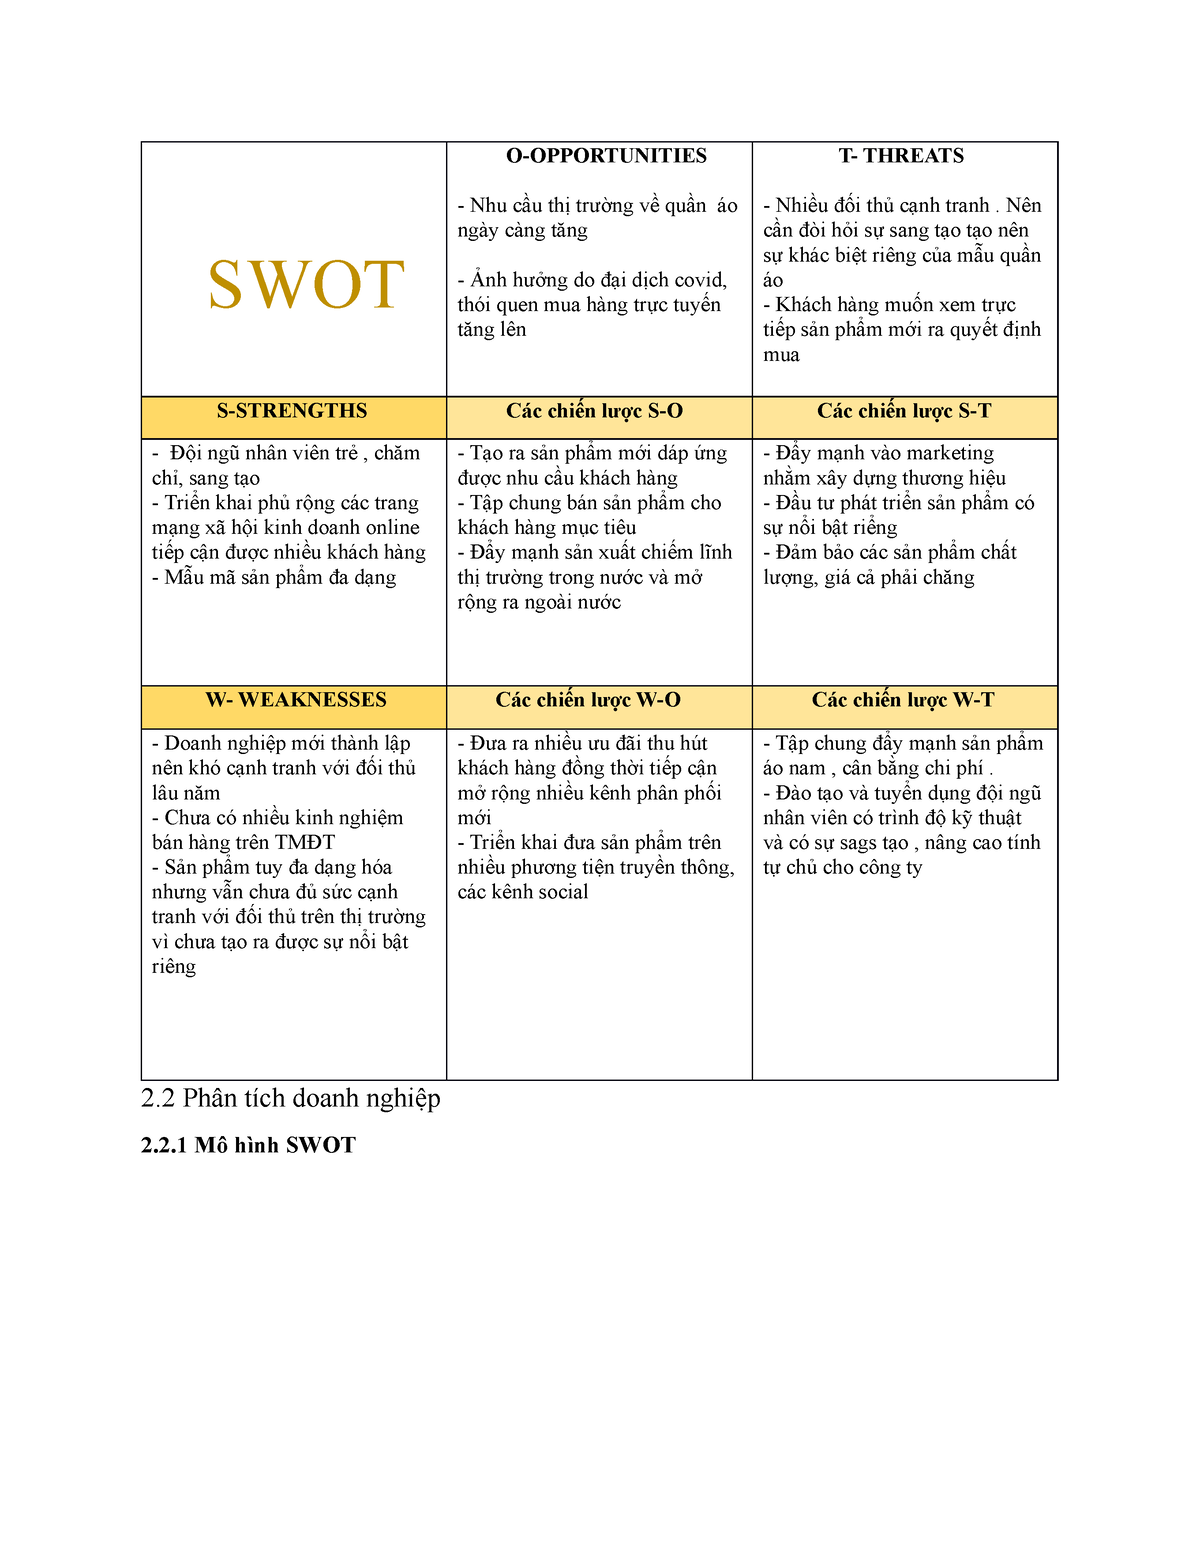 SWOT là gì Lấy ví dụ về mô hình SWOT của doanh nghiệp